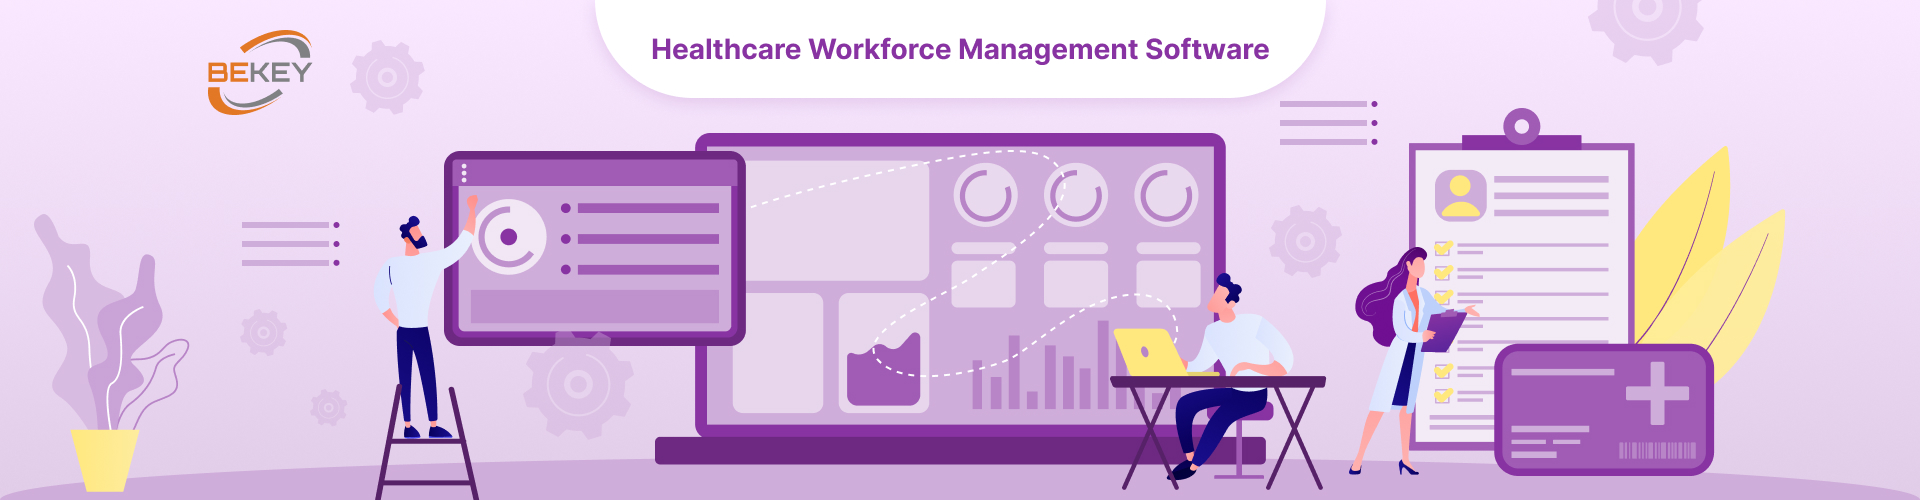 Healthcare Workforce Management Software - image